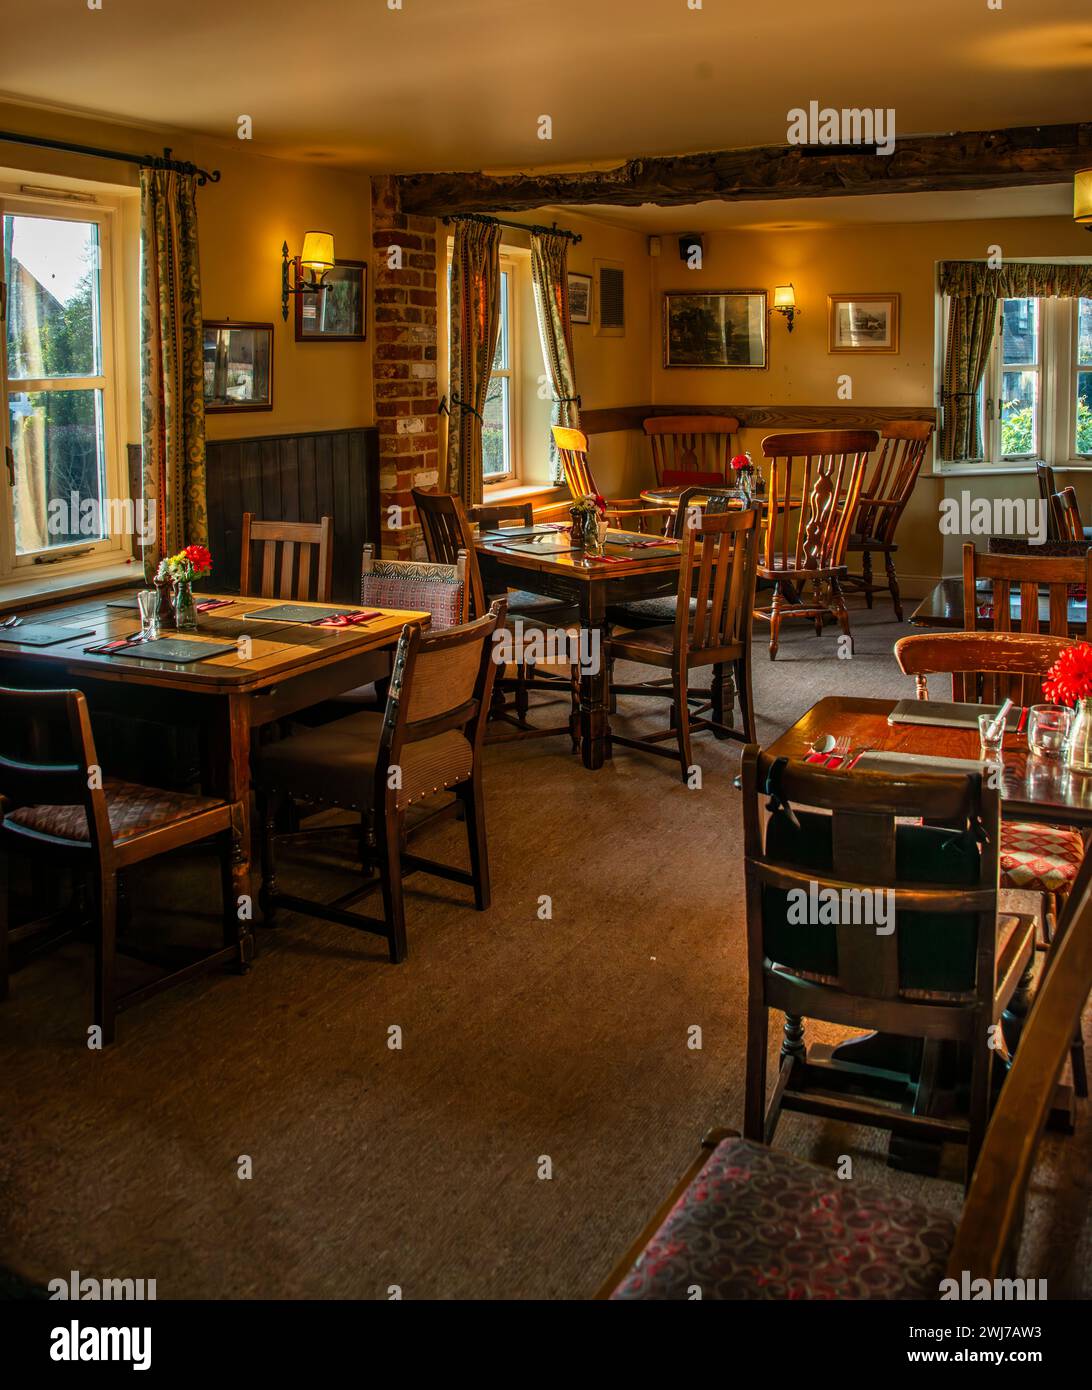 Das Innere eines Wirtshauses, das warm und einladend ist, mit Tischen, die für die Gäste bereit sind, die kulinarischen Köstlichkeiten der Pubs zu probieren. Stockfoto